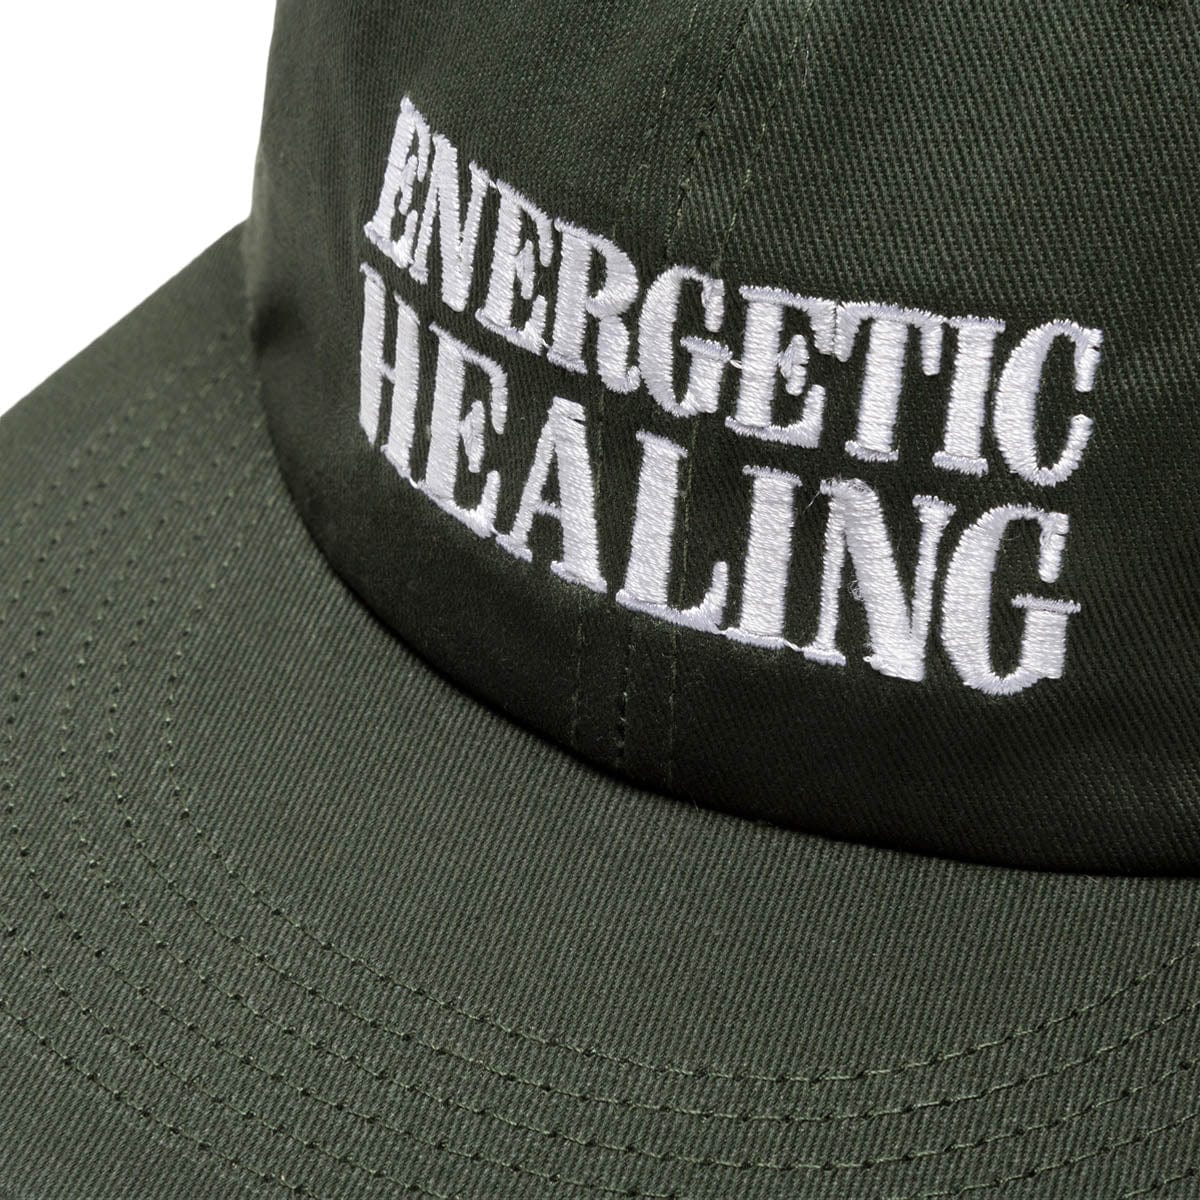 CRTFD Headwear GANJA GREEN / O/S ENERGETIC HEALING HAT